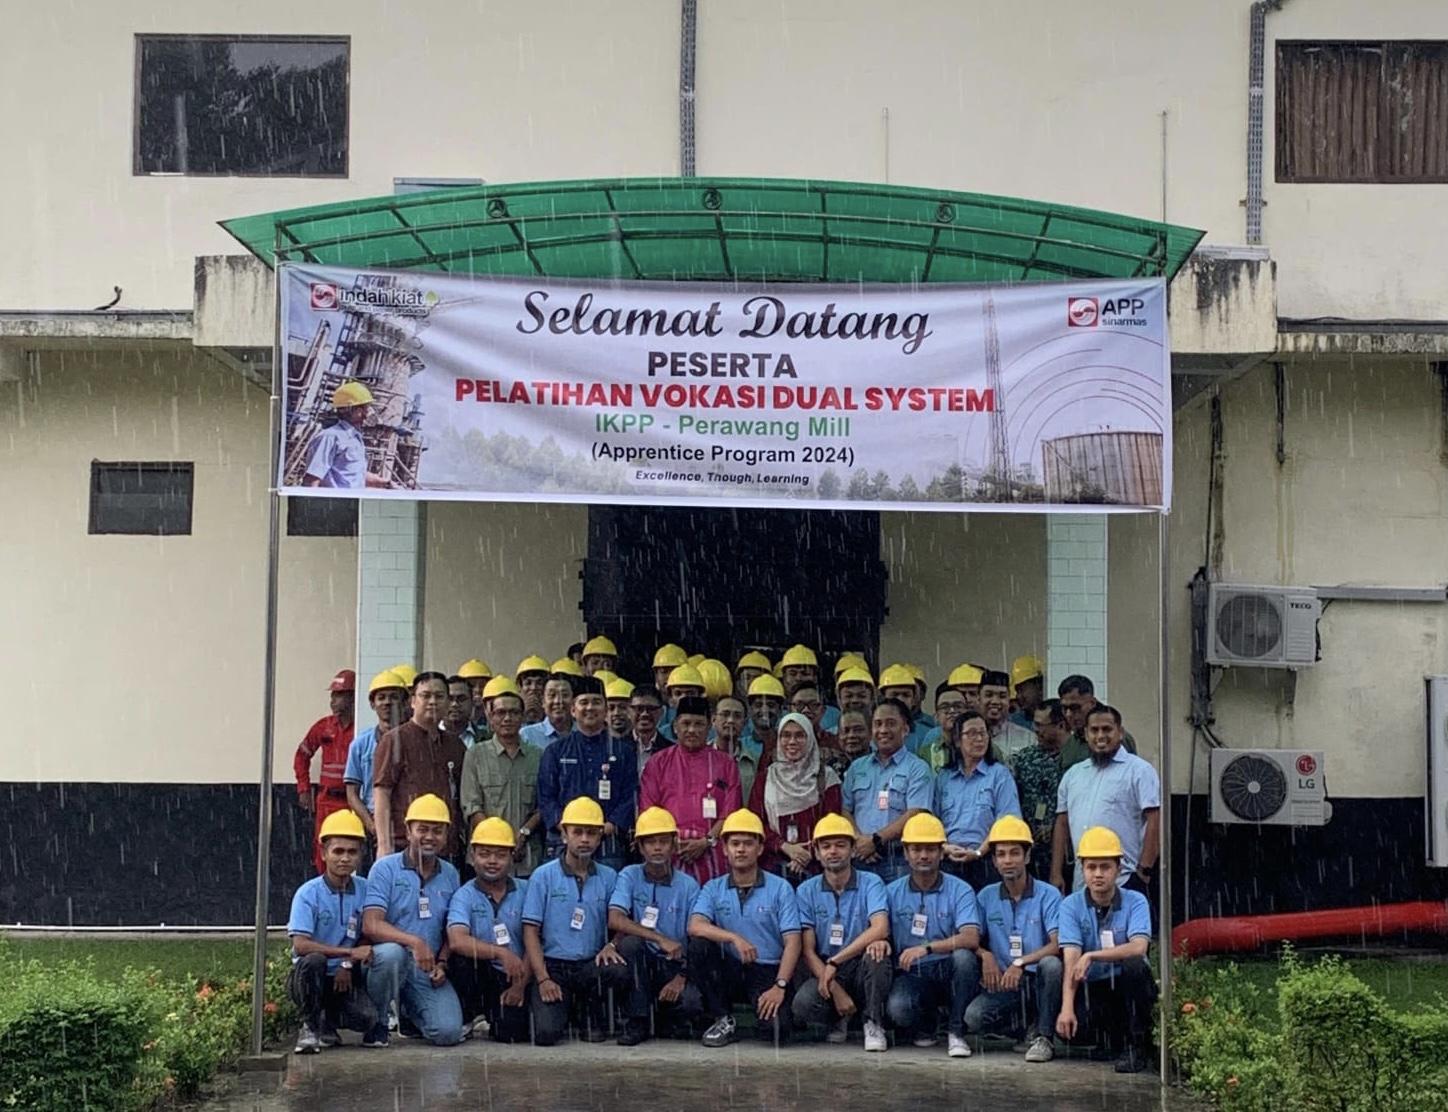 41 Alumni Perguruan Tinggi Riau Ikuti Magang Industri di IKPP Perawang